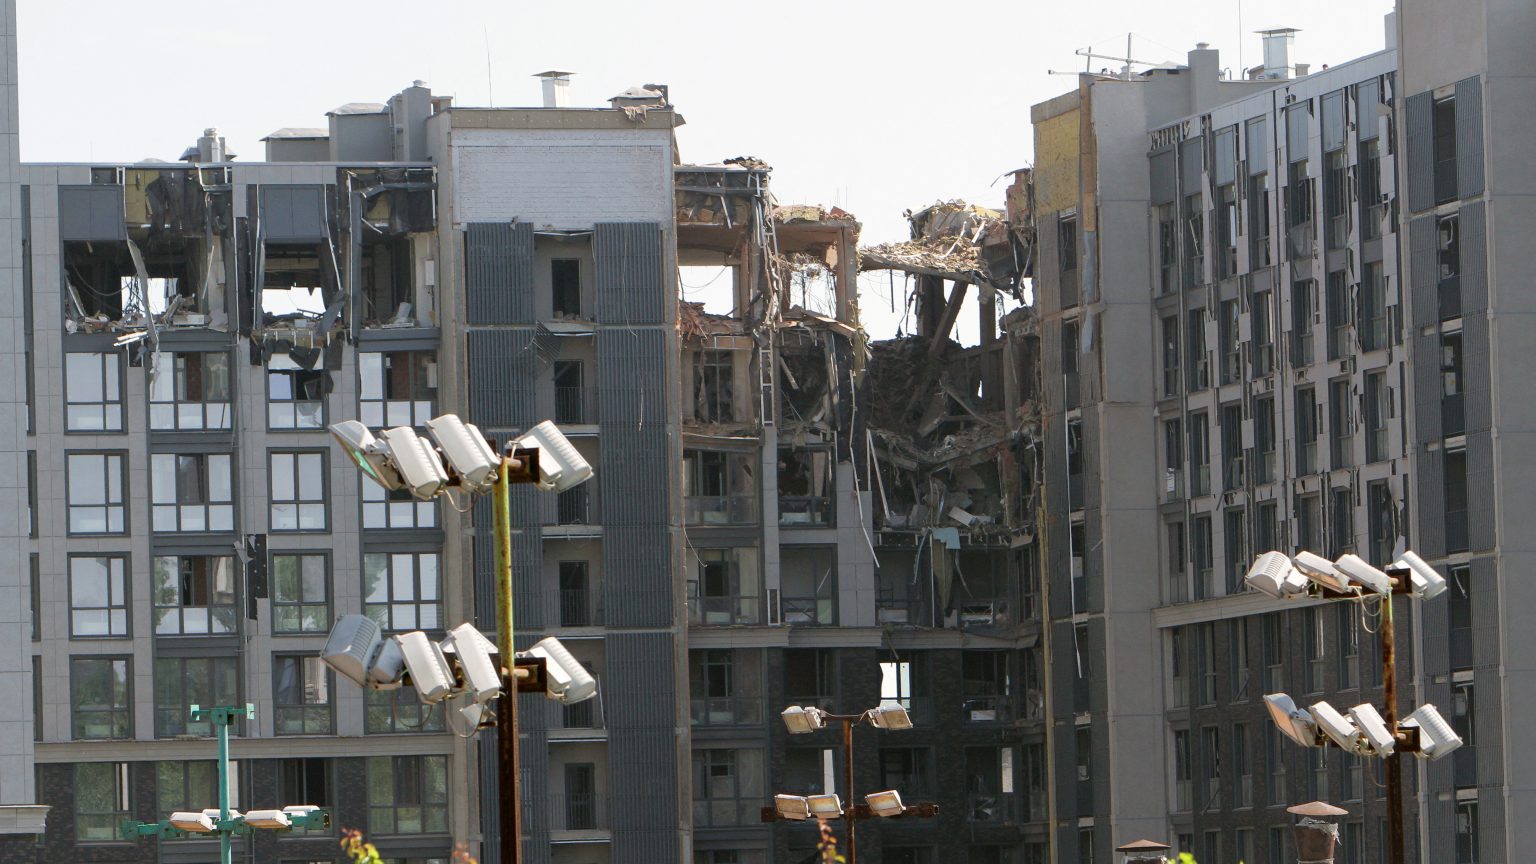 Napközis gyerektábornak és humanitárius szervezeteknek adott otthont a szálloda, amíg az oroszok le nem bombázták